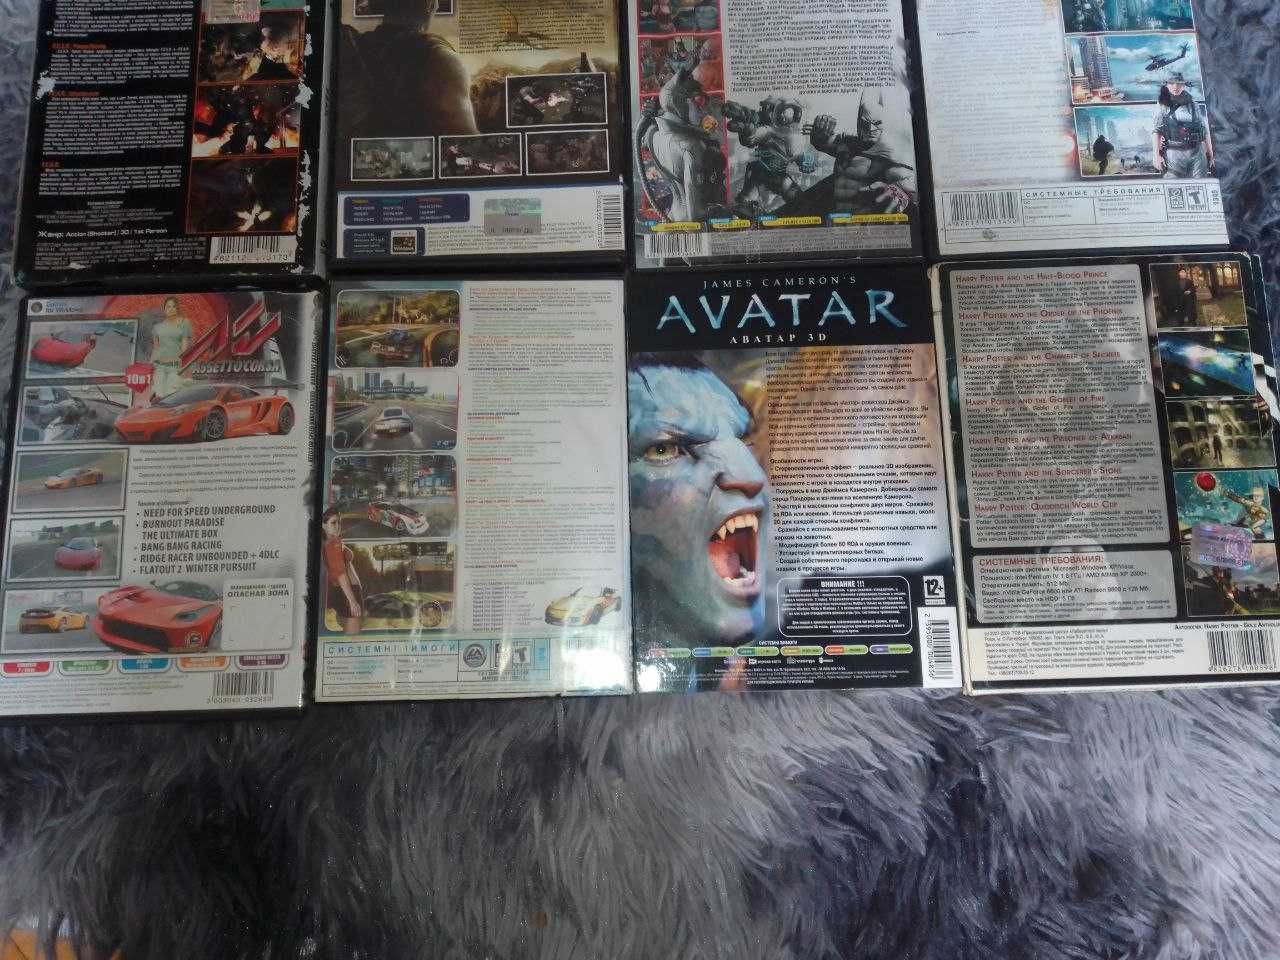 Сборник игр на PC F.E.A.R., Batman, Battlefield 4, Турок, Avatar 3D